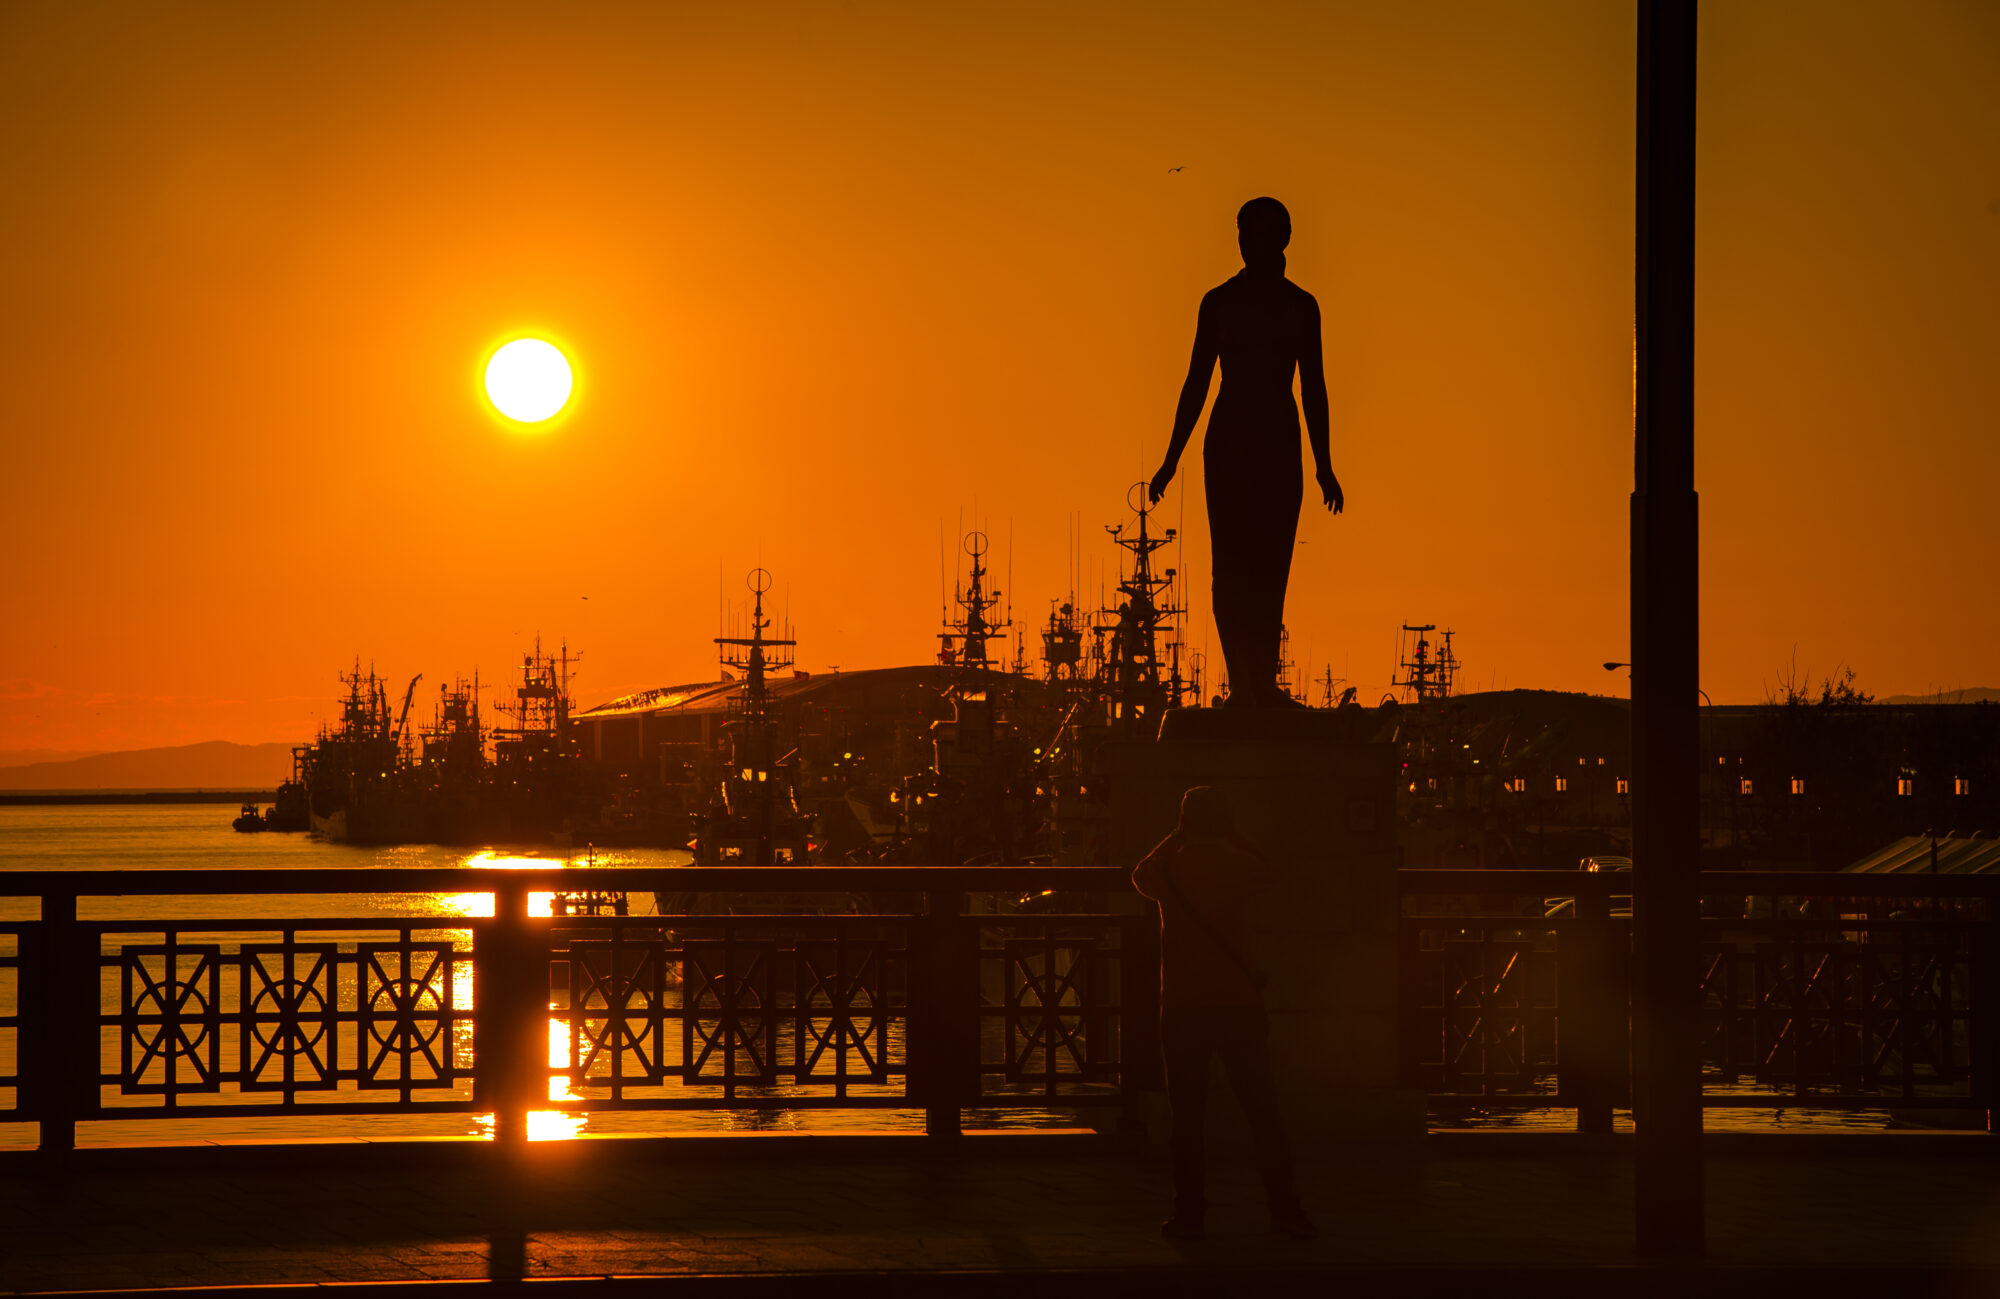 釧路・幣舞橋からみた夕日の写真